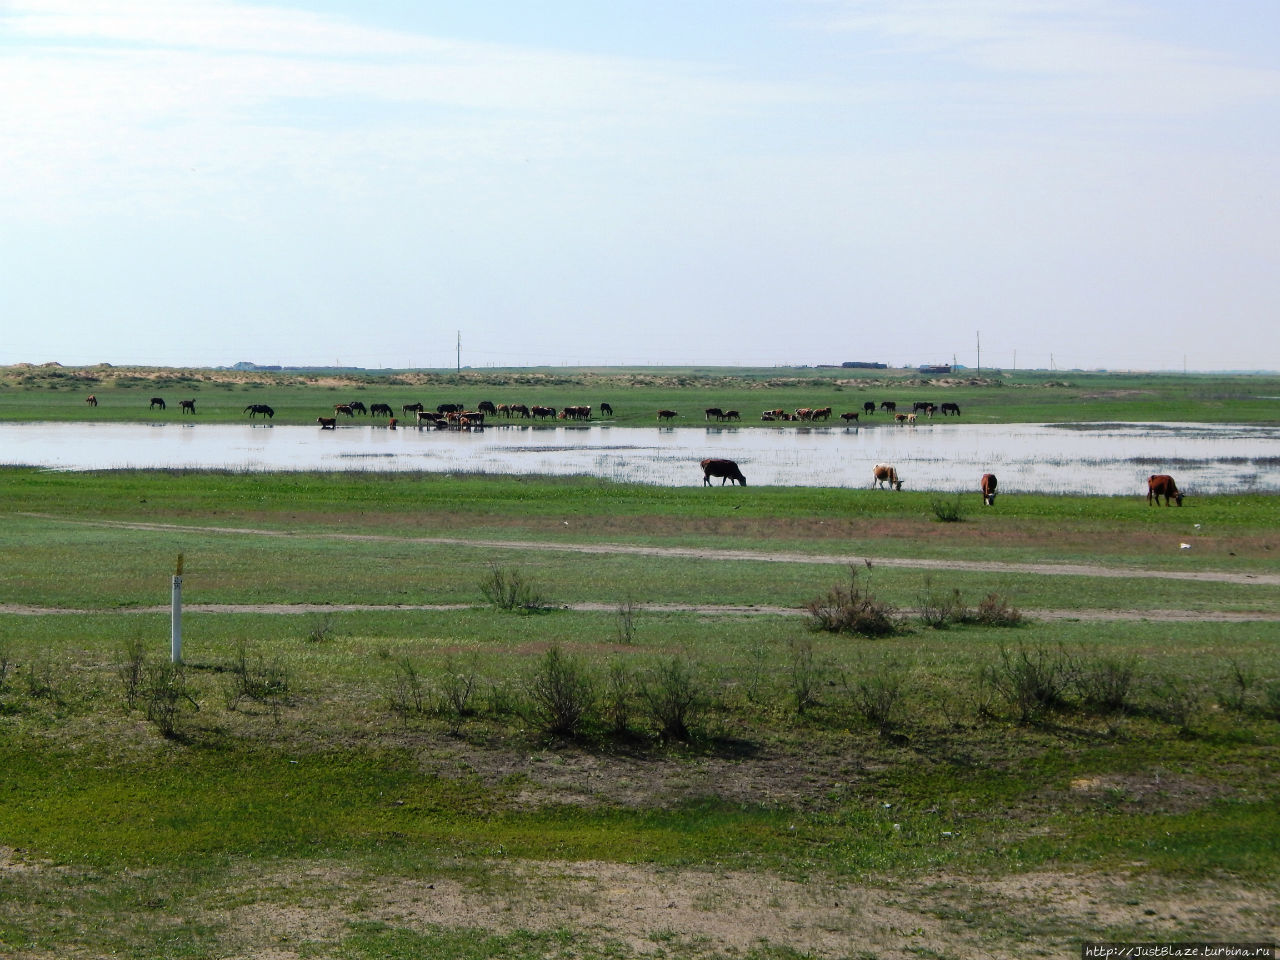 Бурёнки, лошадки и верблюды Мангистауская область, Казахстан